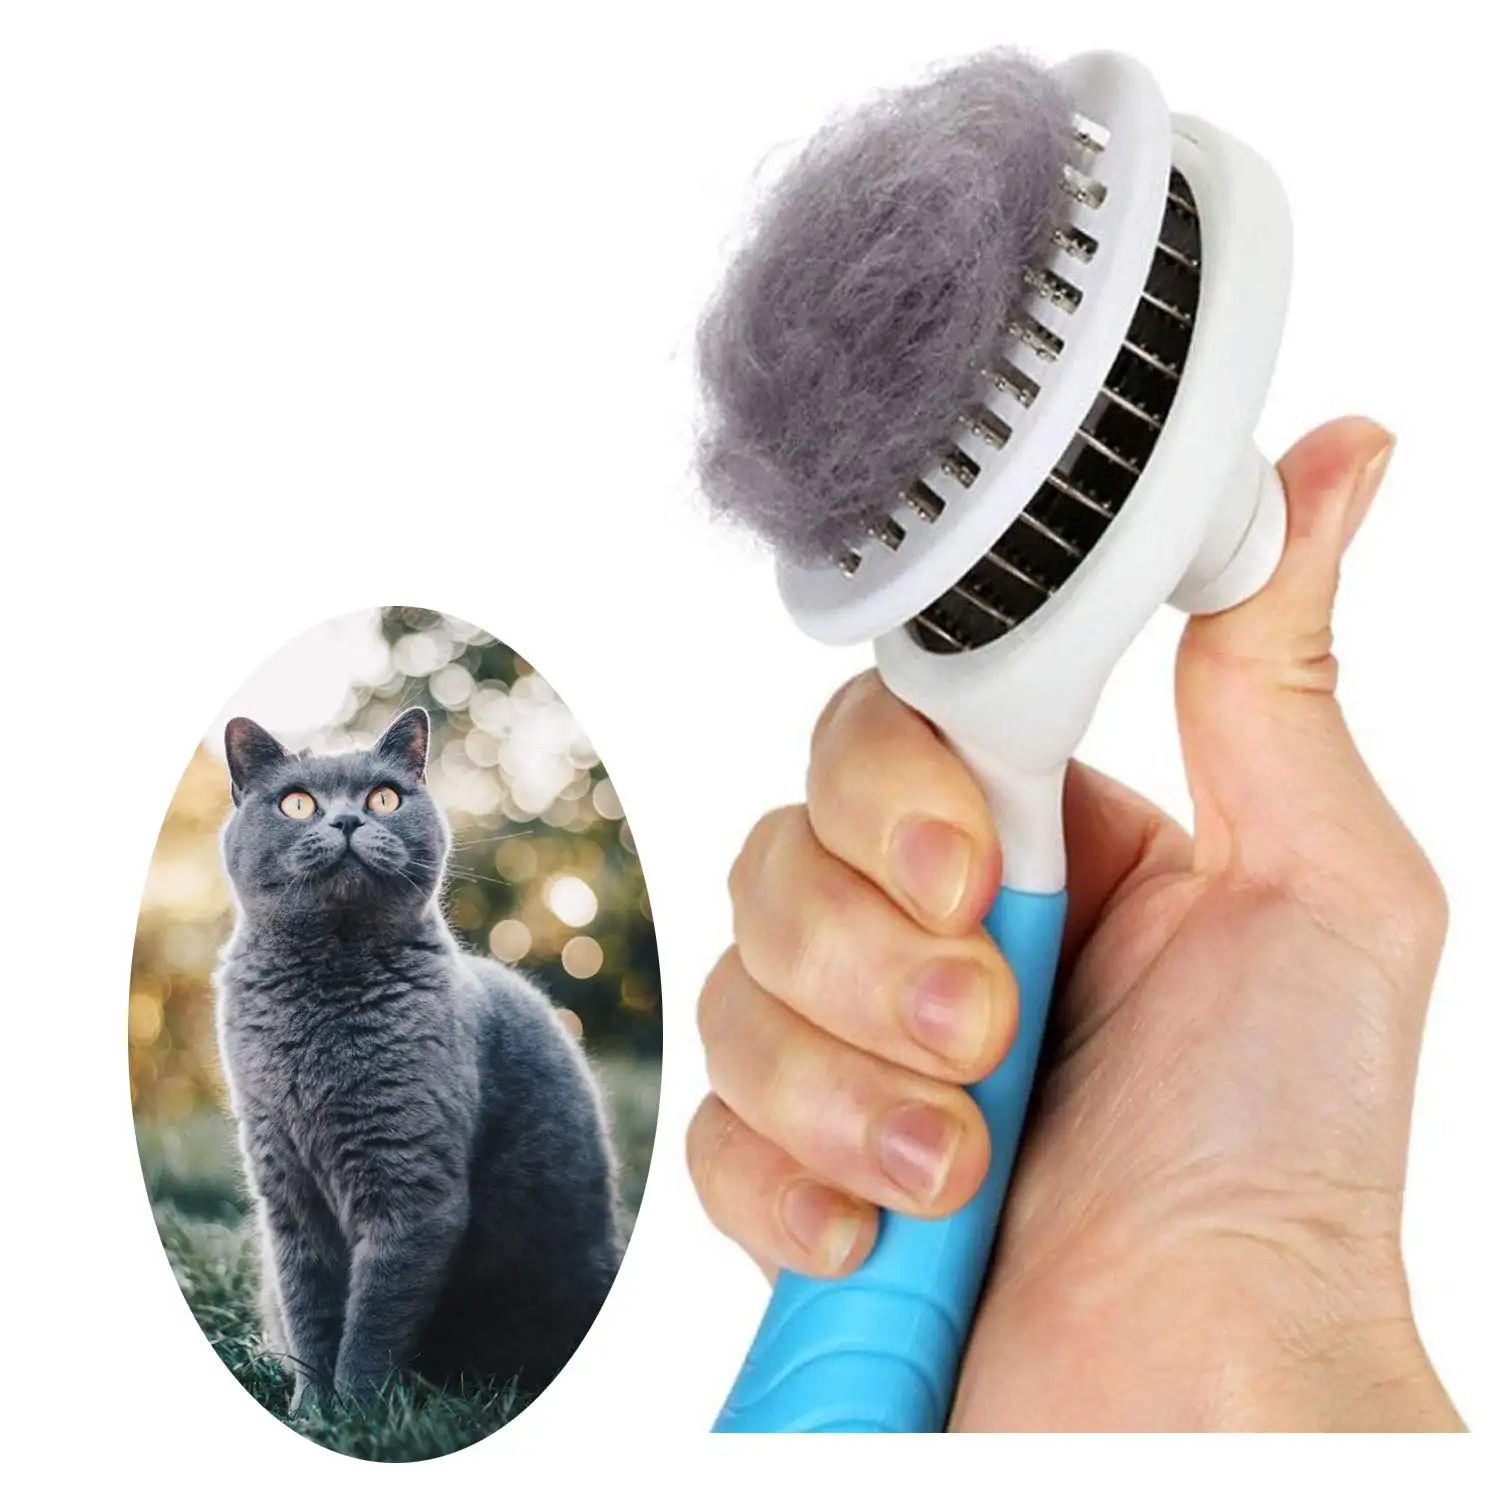 Suministros para gatos, cepillo mejorado para el cuidado del gato, gatos, perros, autolimpieza, elimina suavemente la capa interna suelta, esteras, pelo enredado, masaje para mascotas